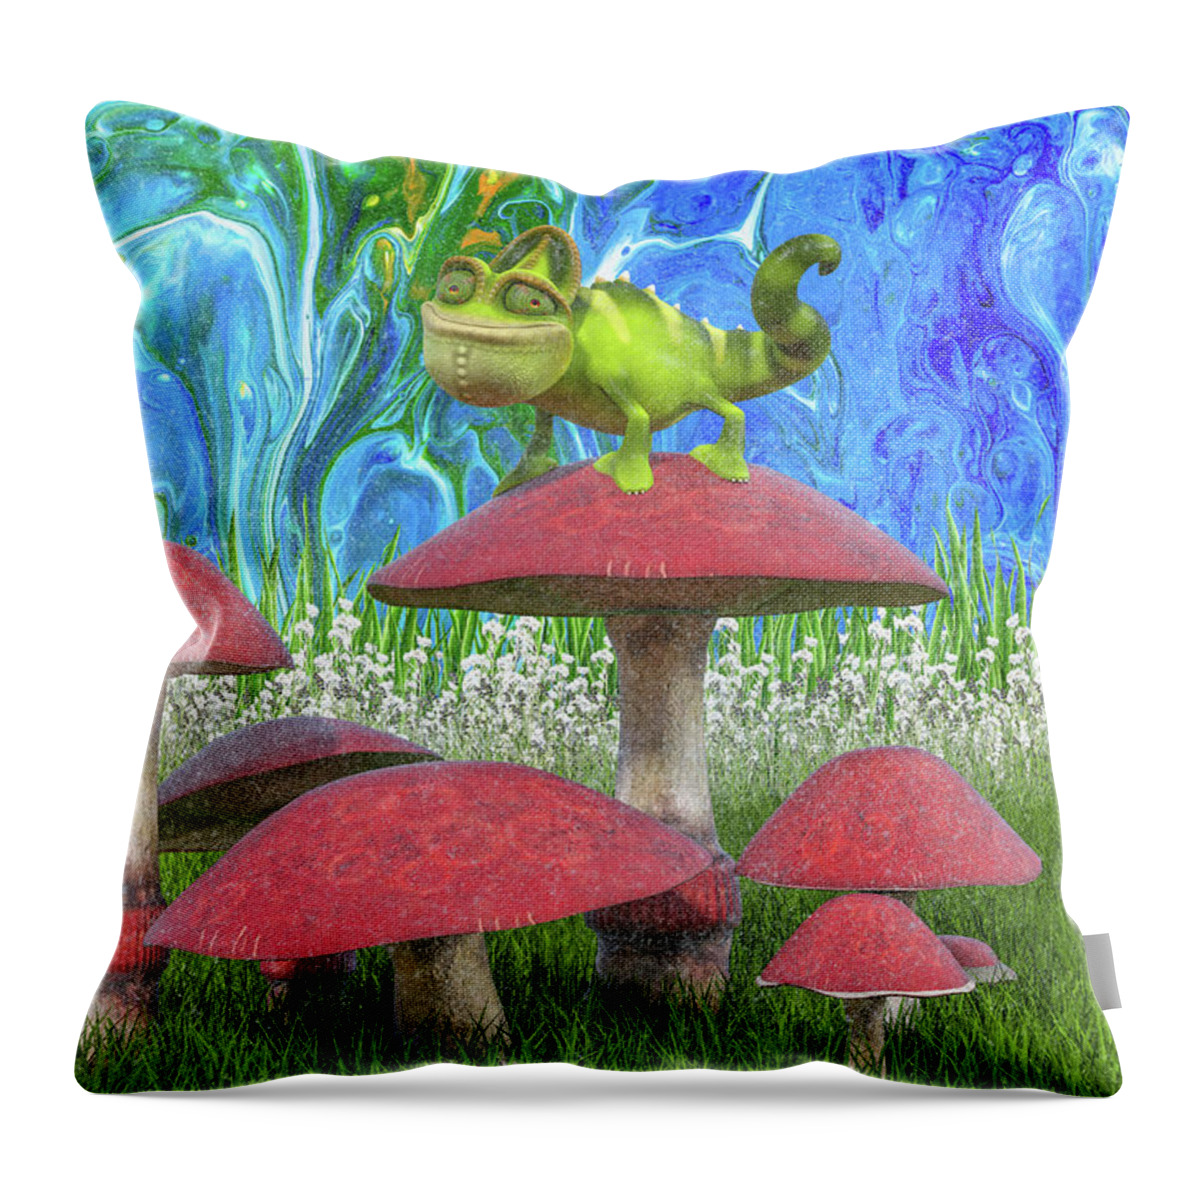 Chameleon Throw Pillow featuring the digital art Hopeful Chameleon by Betsy Knapp